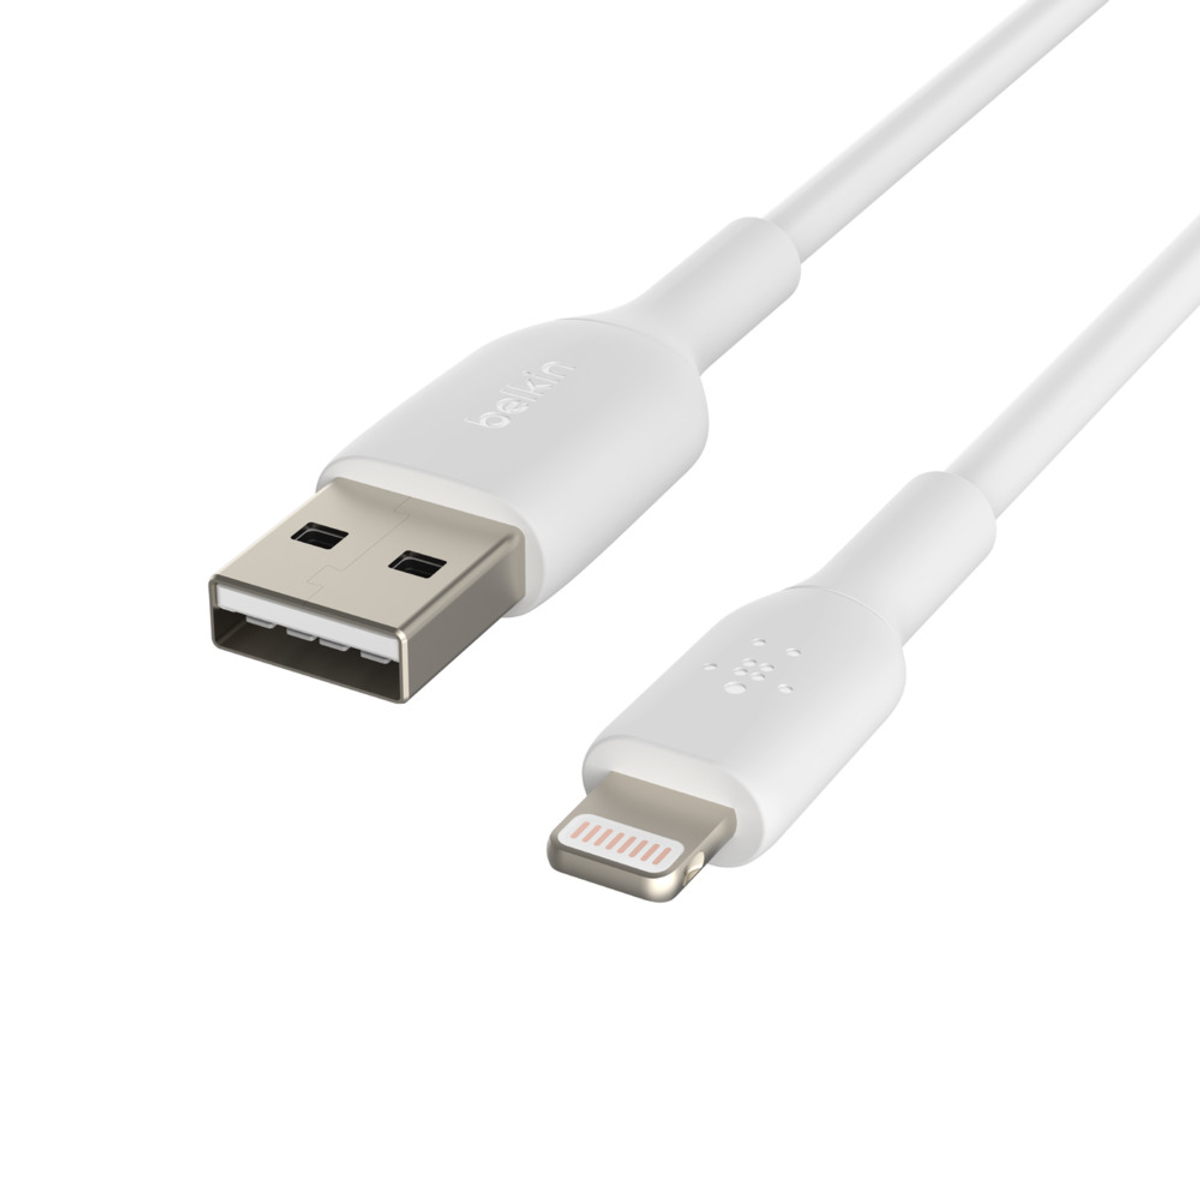 BELKIN USB USB-Kabel / Kabel MFi Lightning 3m